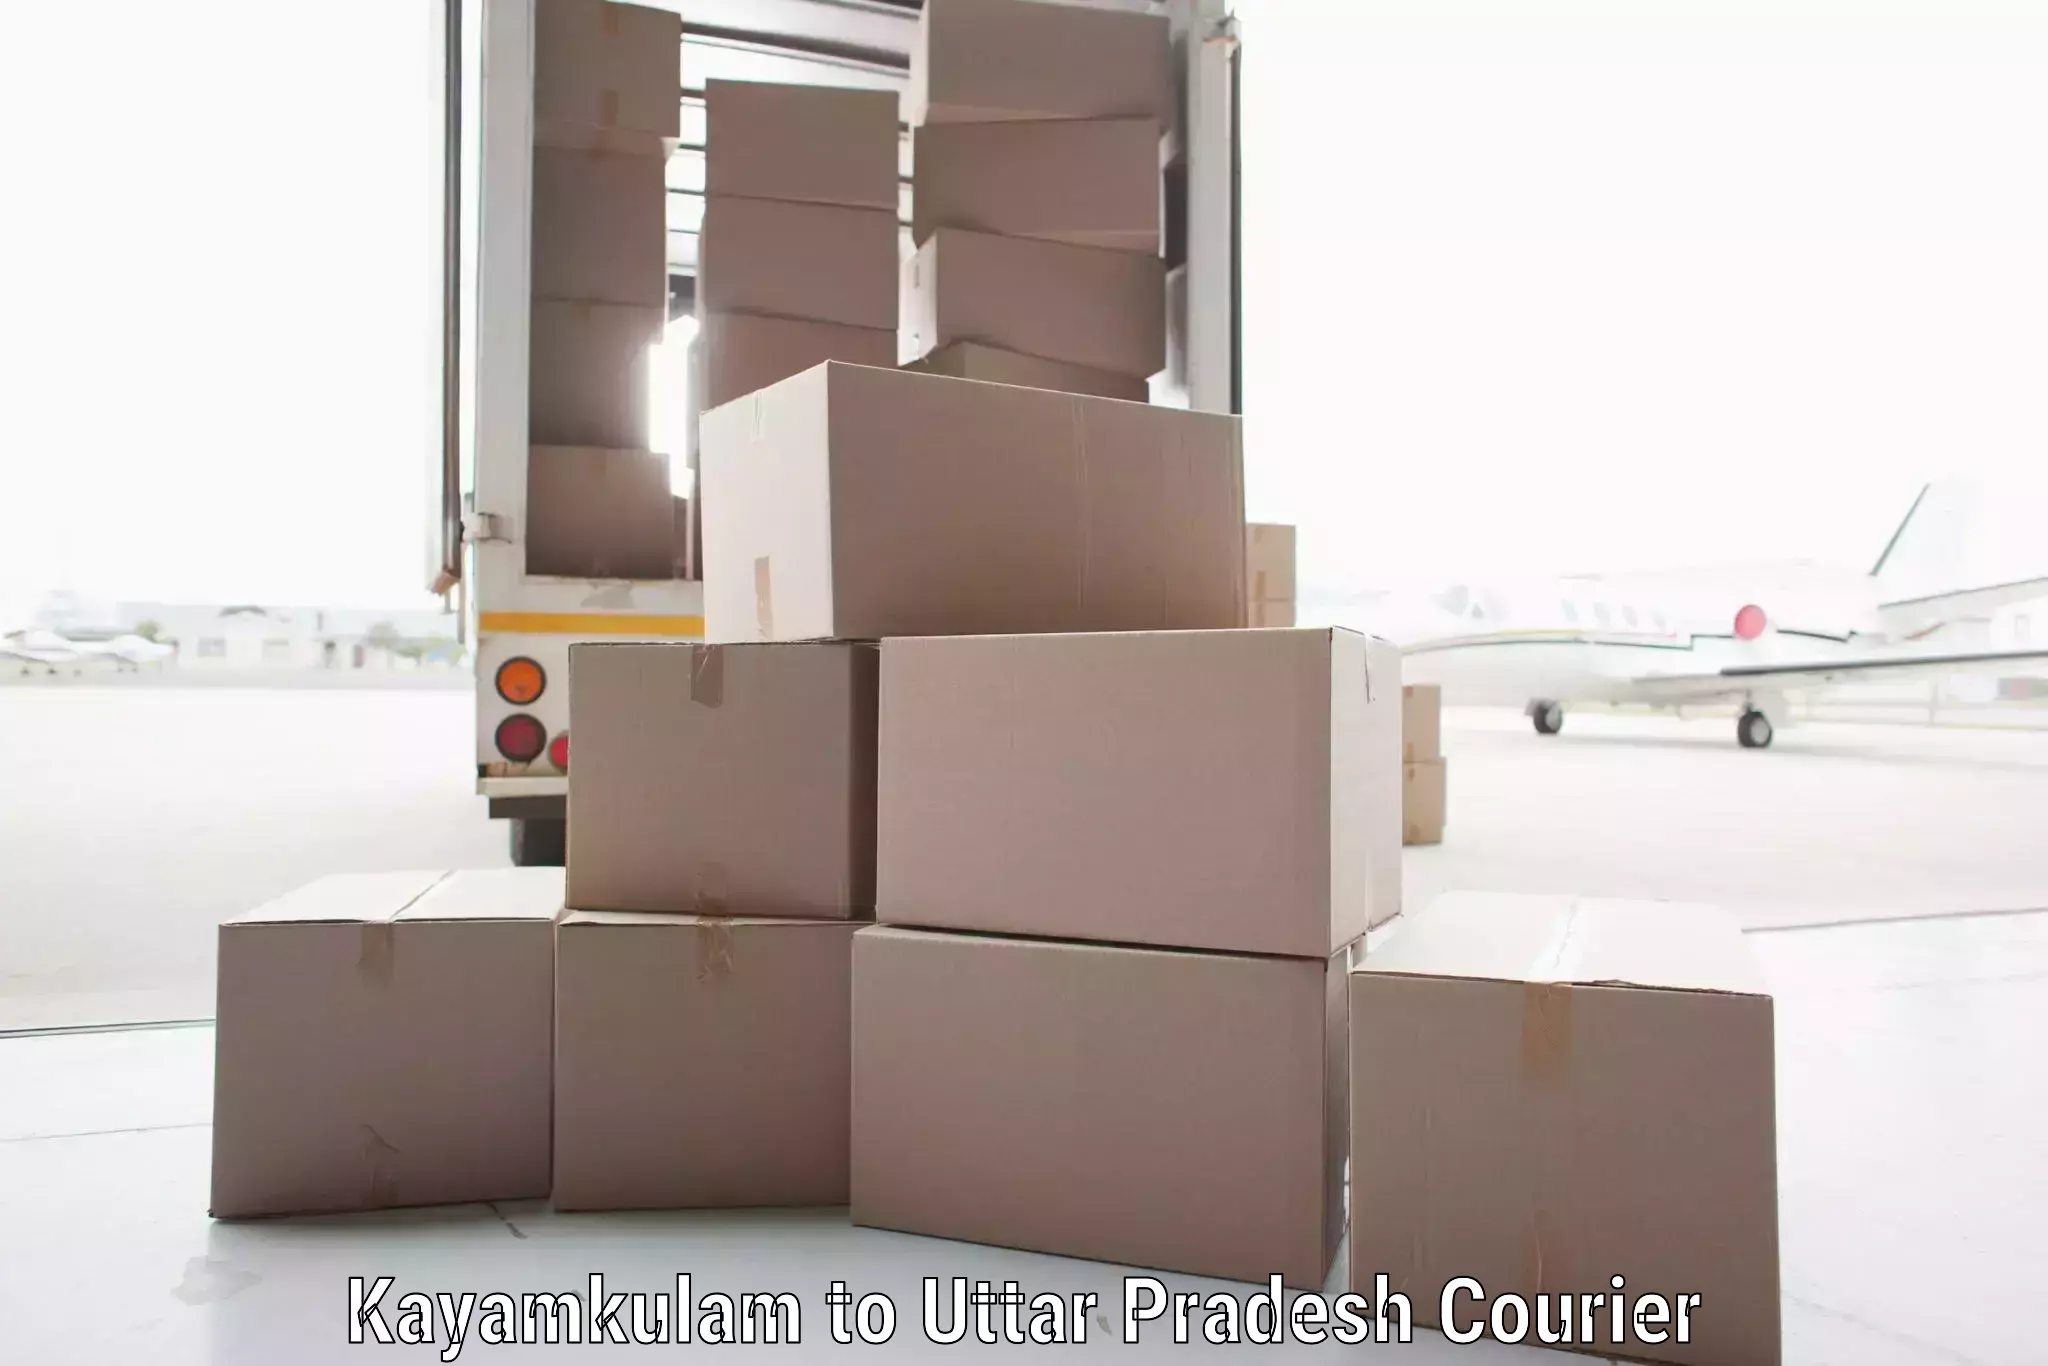 Integrated shipping solutions Kayamkulam to Bahraich